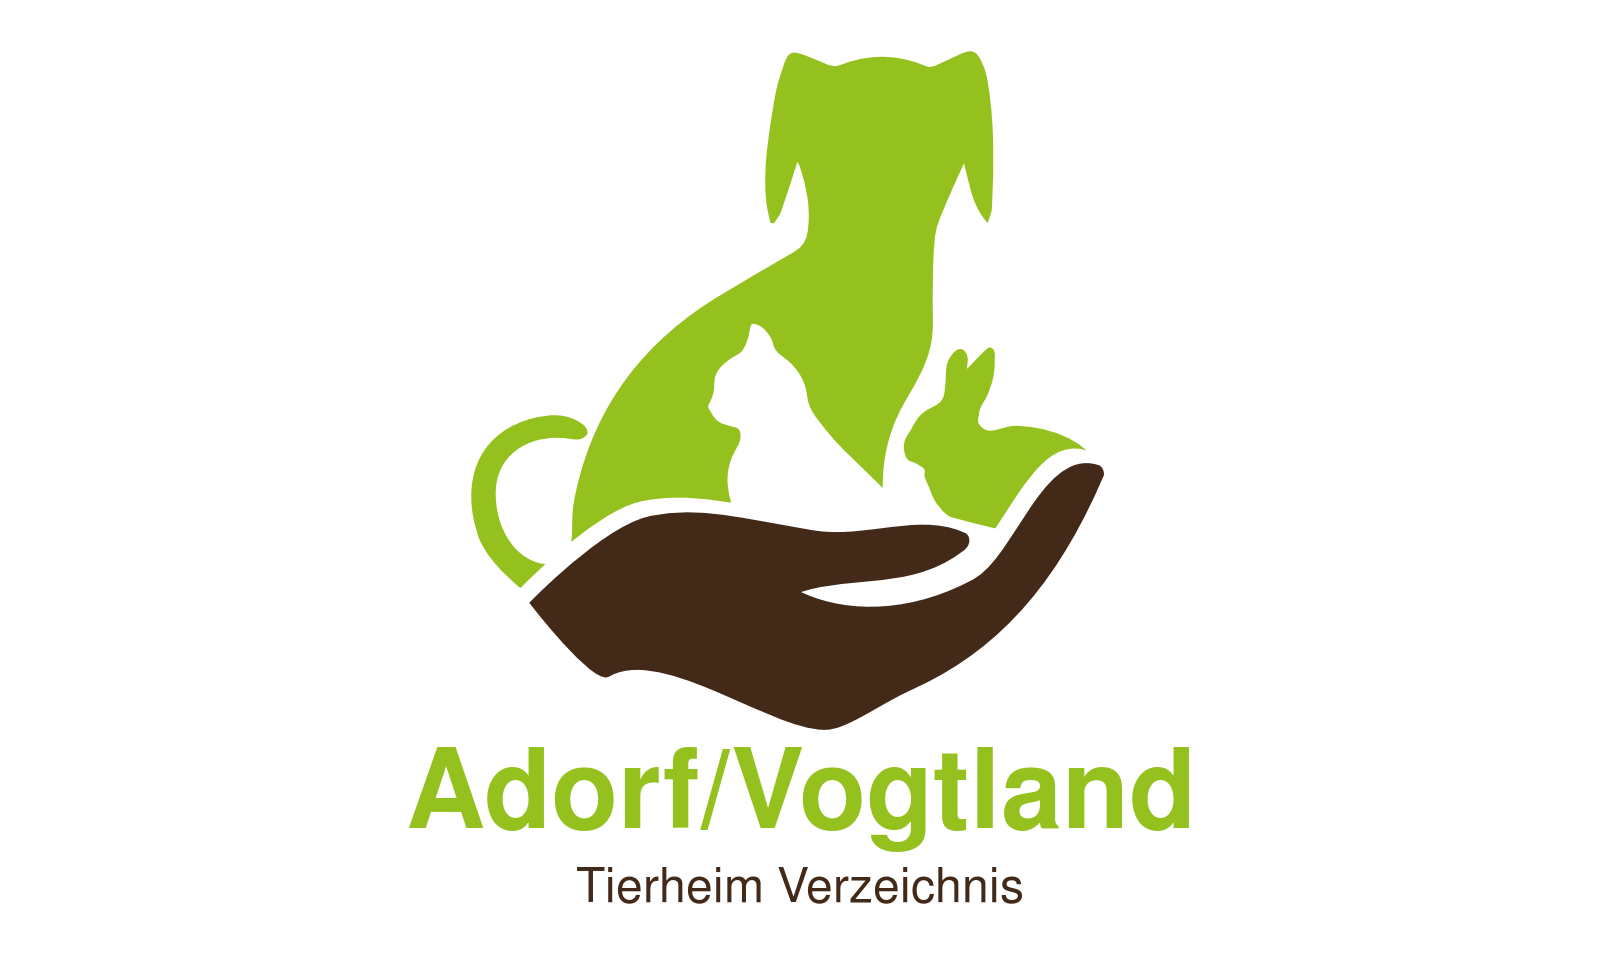 Tierheim Adorf/Vogtland